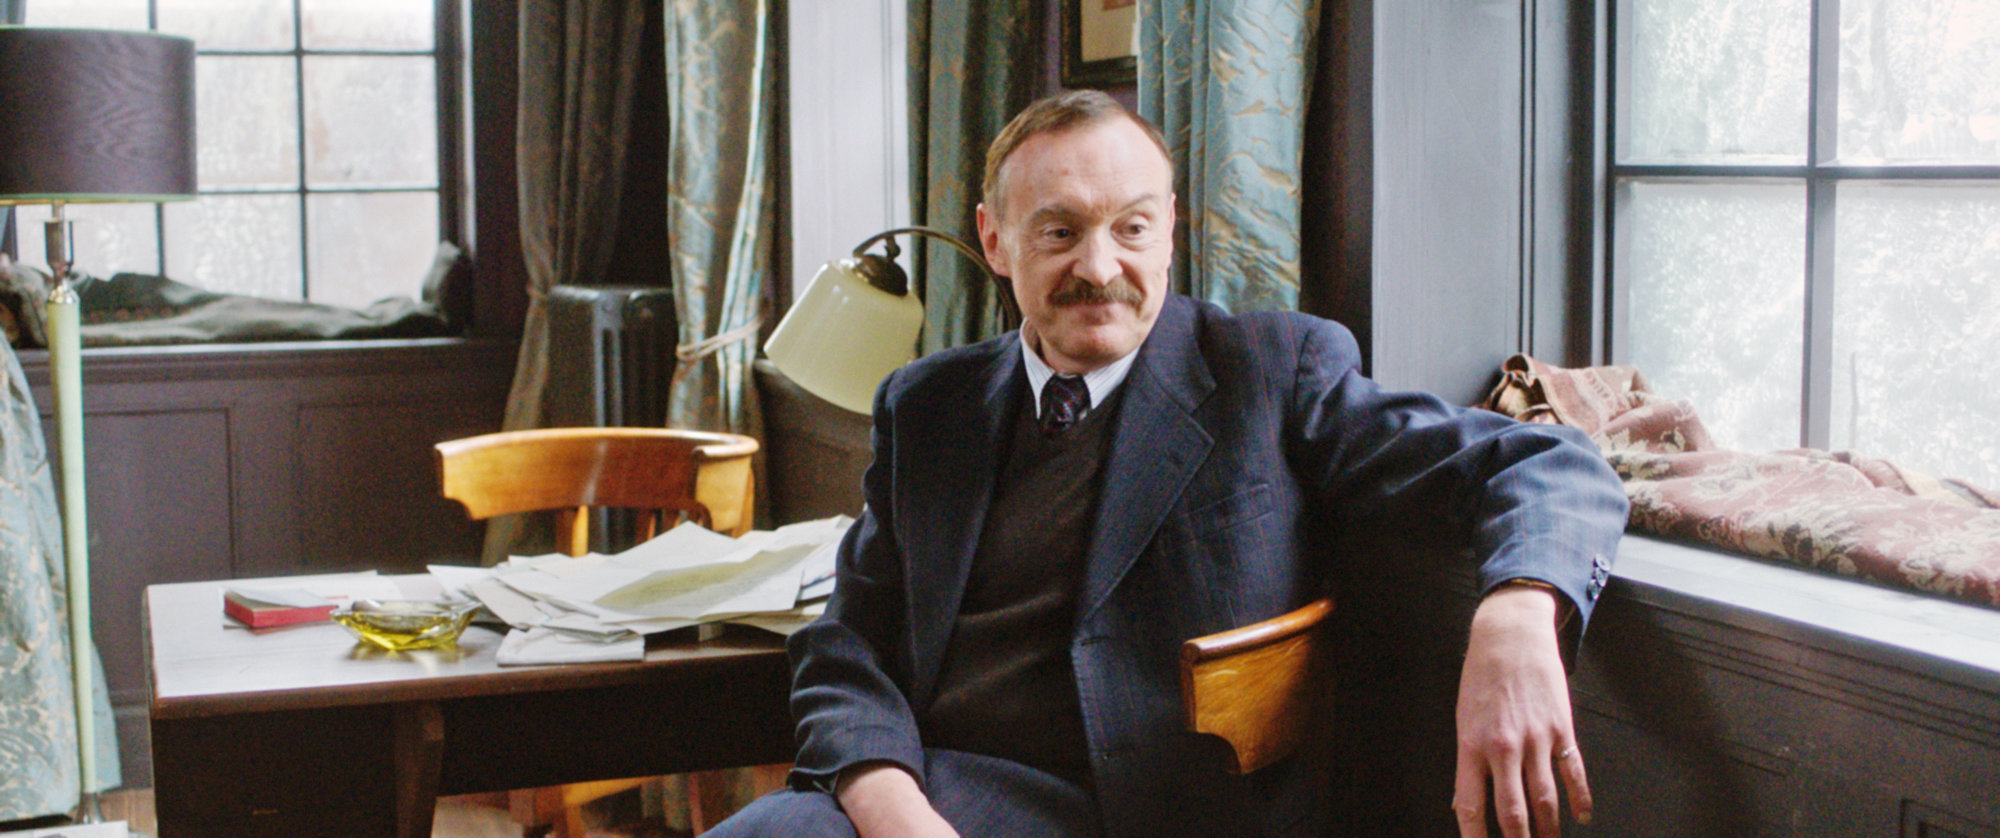 Filme sobre Stefan Zweig terá sessão especial em Petrópolis